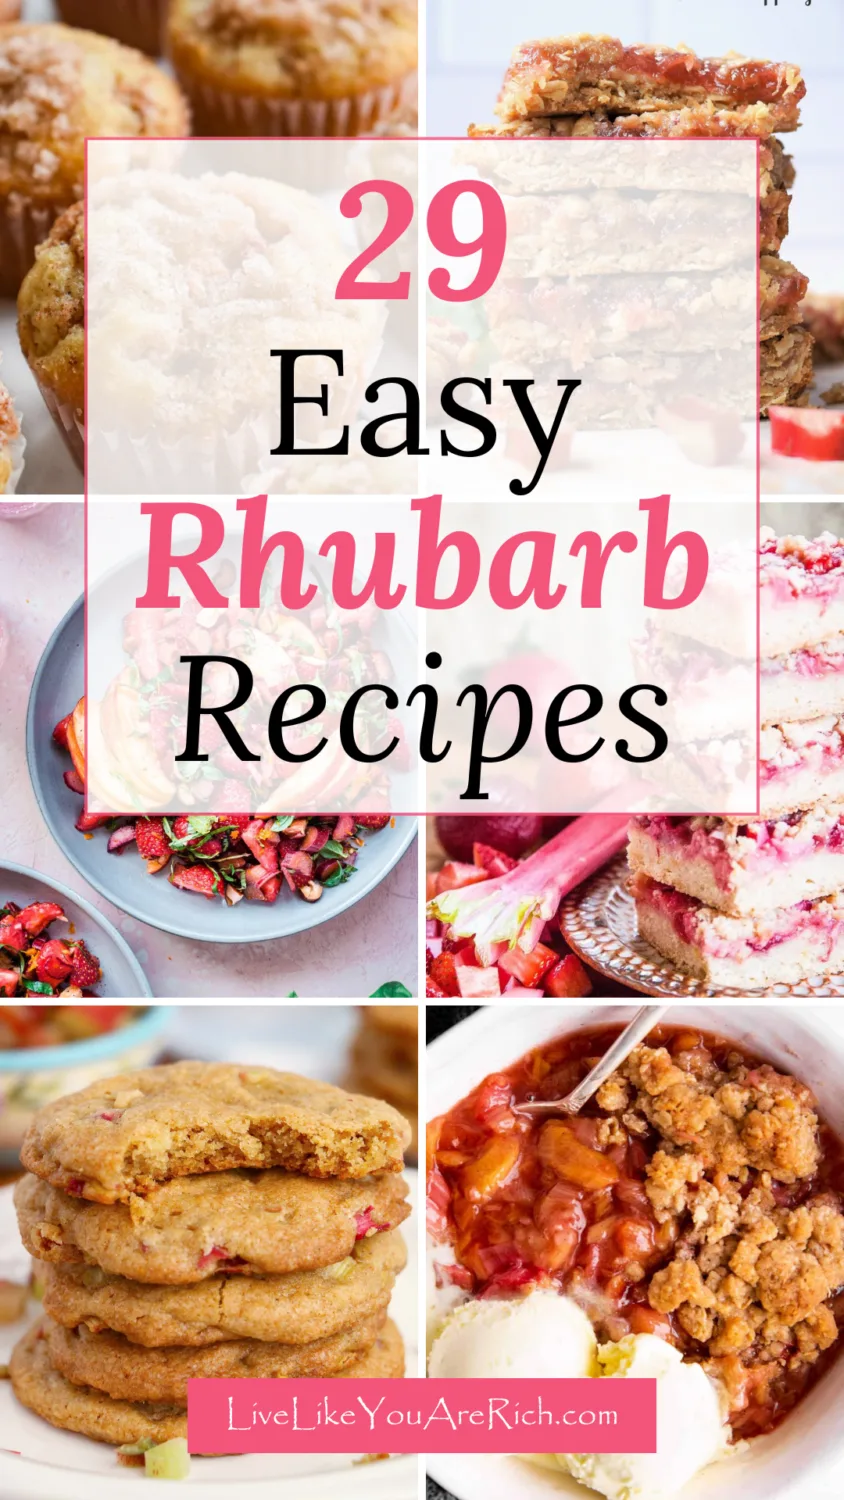 29 Easy Rhubarb Recipes